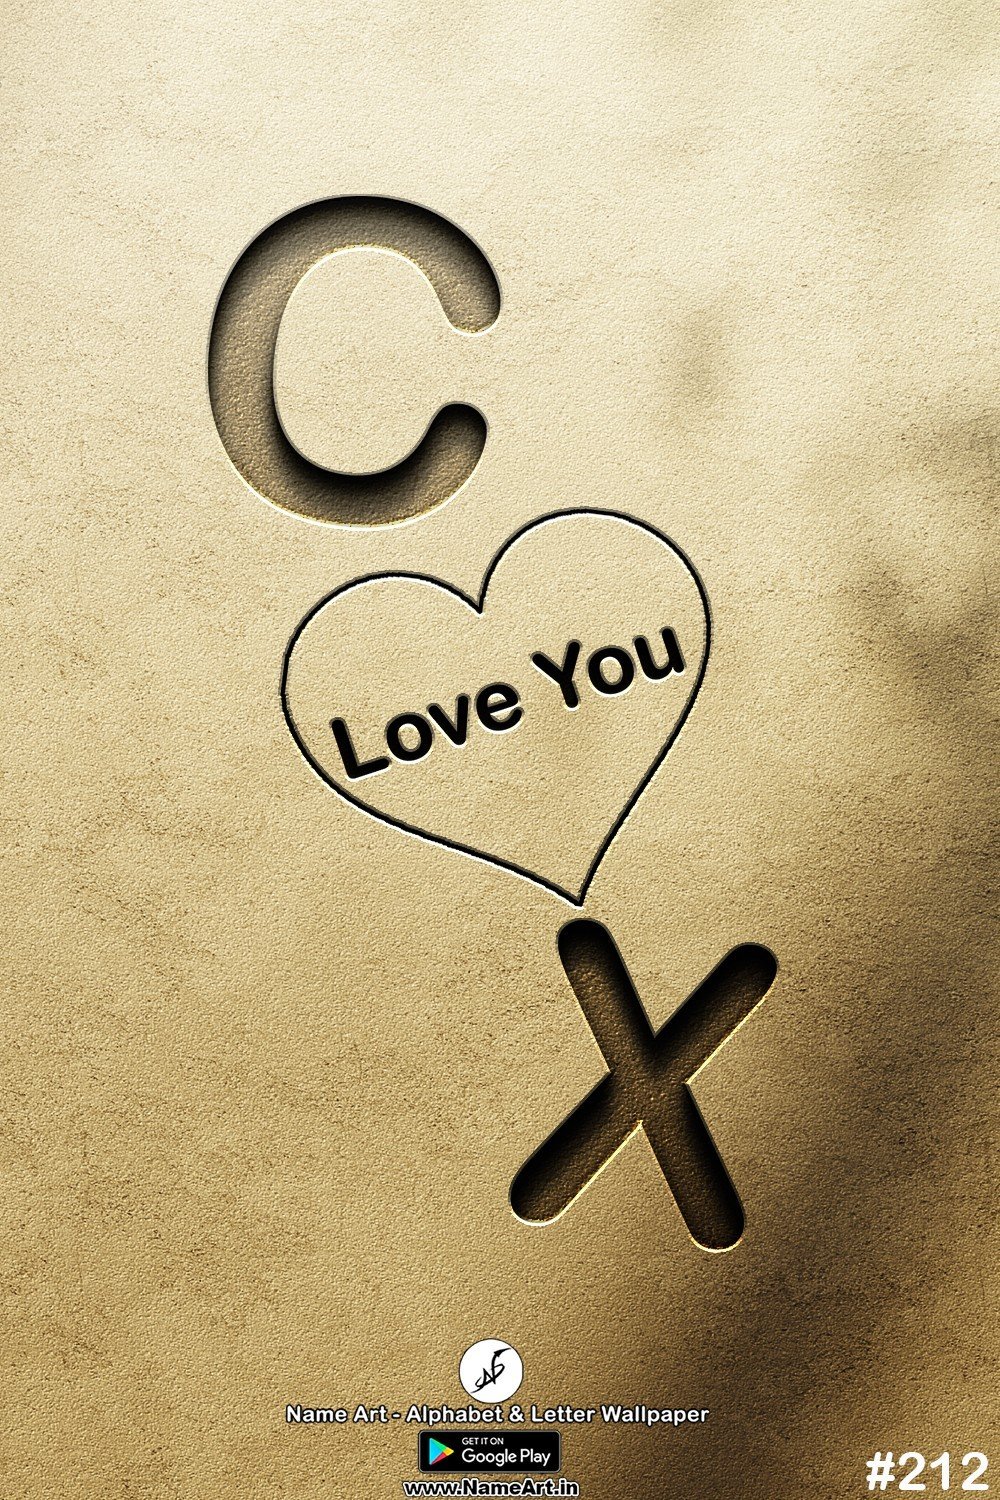 CX | Whatsapp Status DP CX | CX Love Status Cute Couples Whatsapp Status DP !! | New Whatsapp Status DP CX Images |